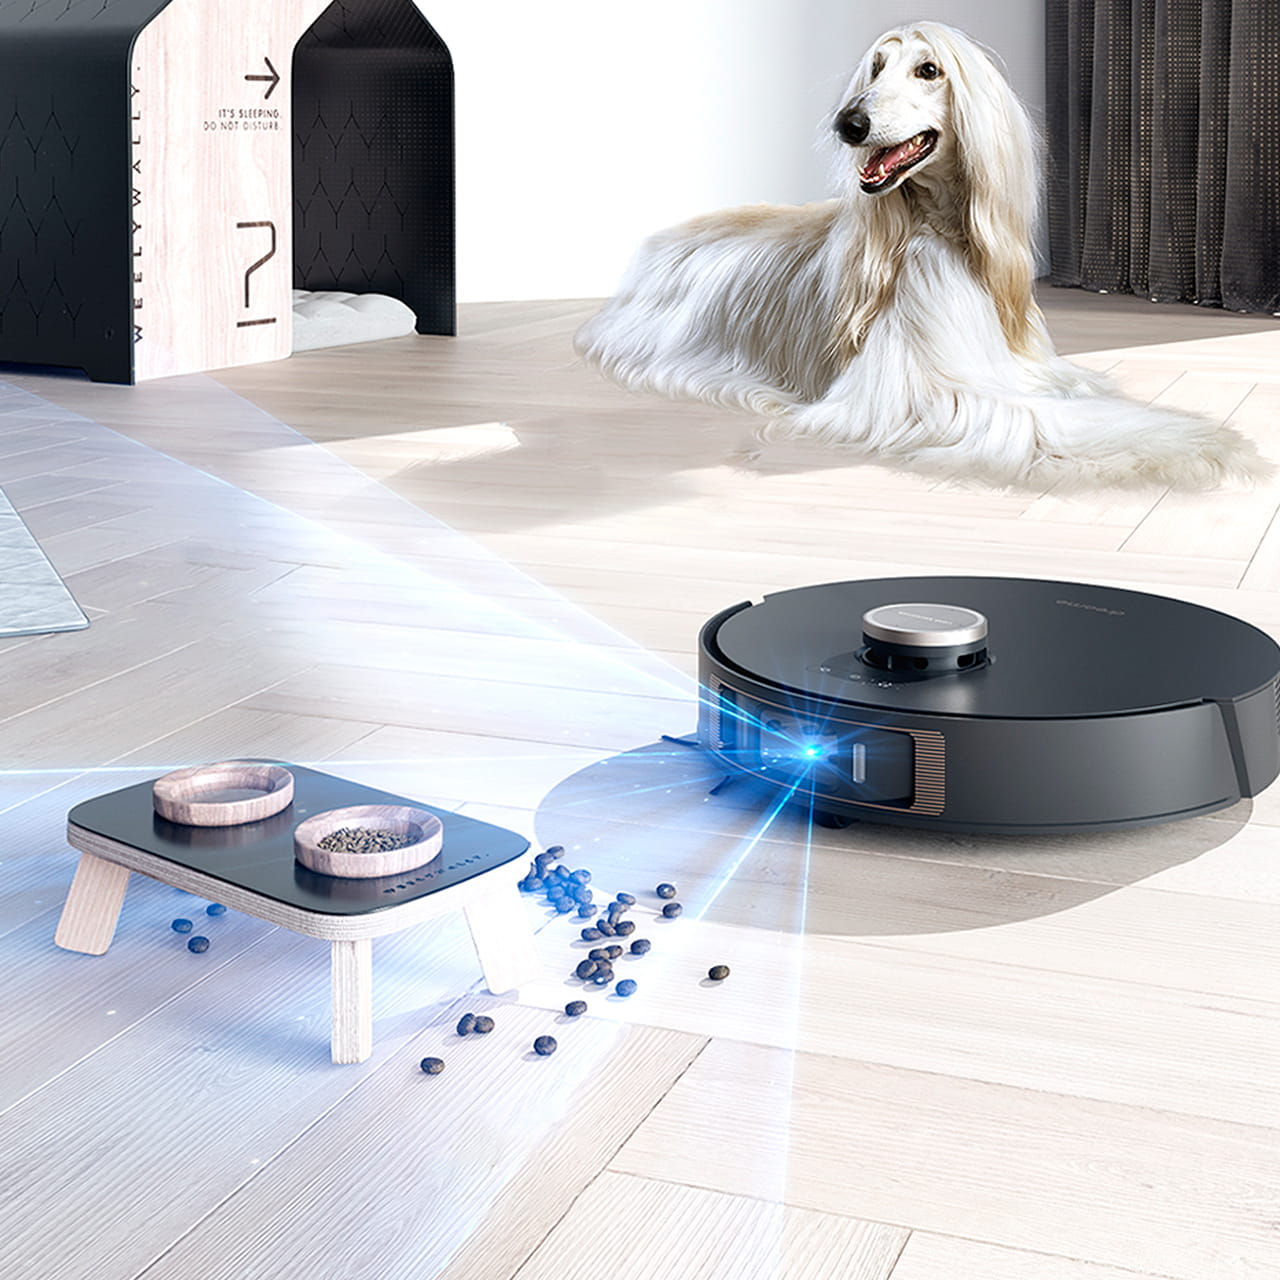 Dreame X20 Pro способен определять места отведённые для домашних животных